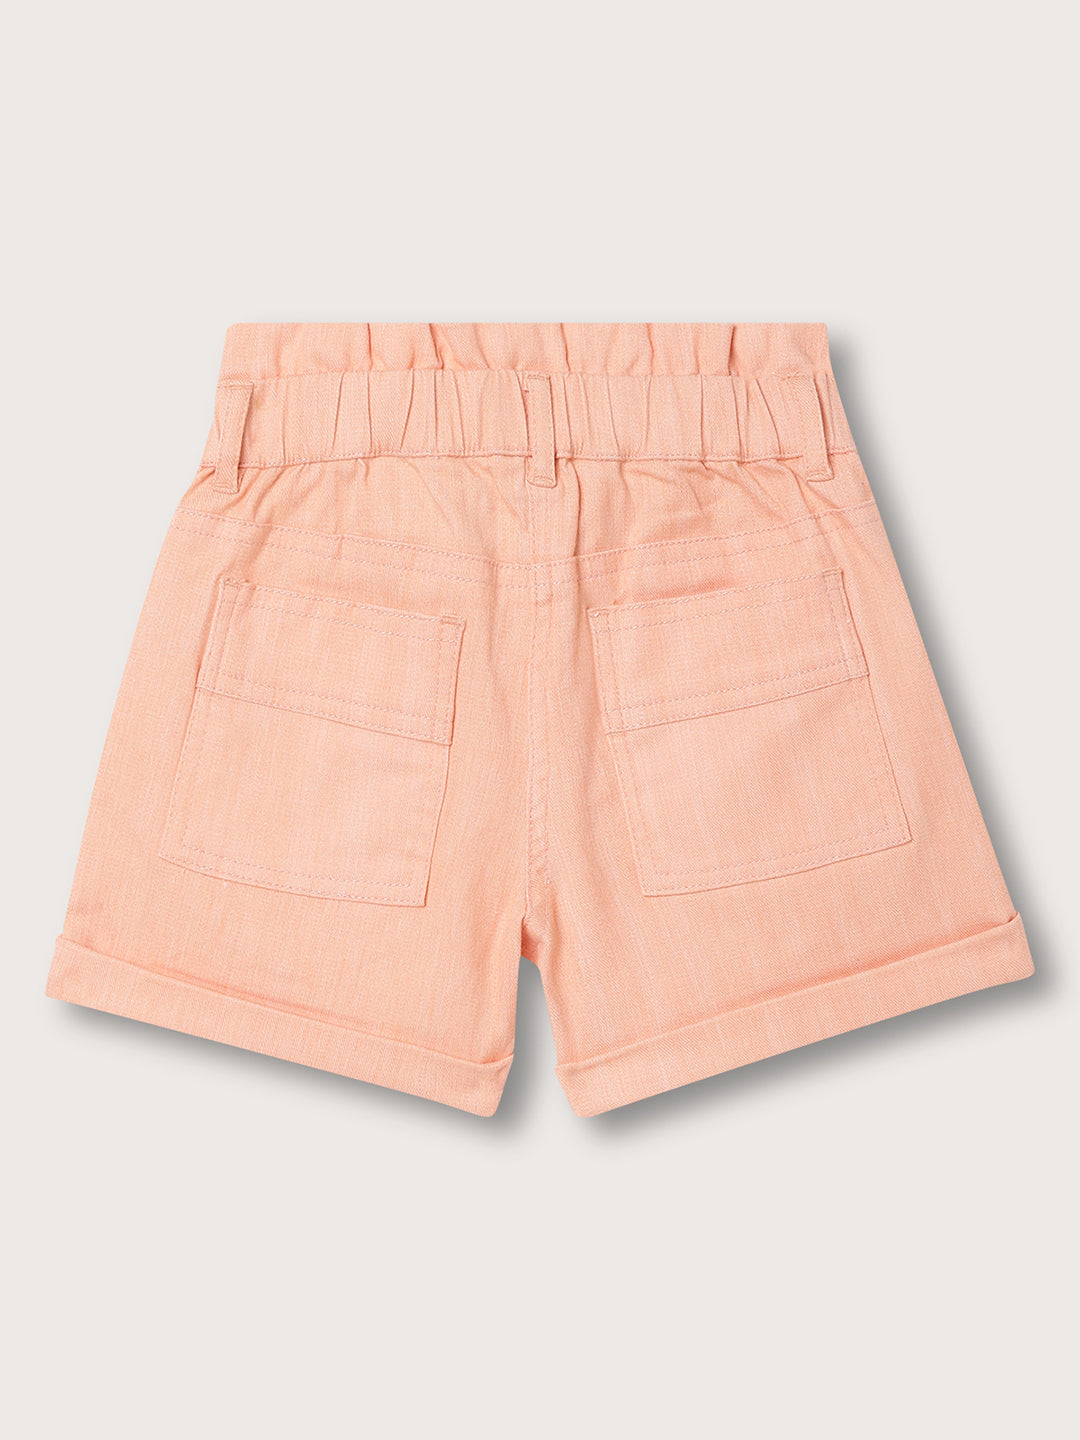 Elle Kids Girls Pastel Orange Solid Regular Fit Shorts